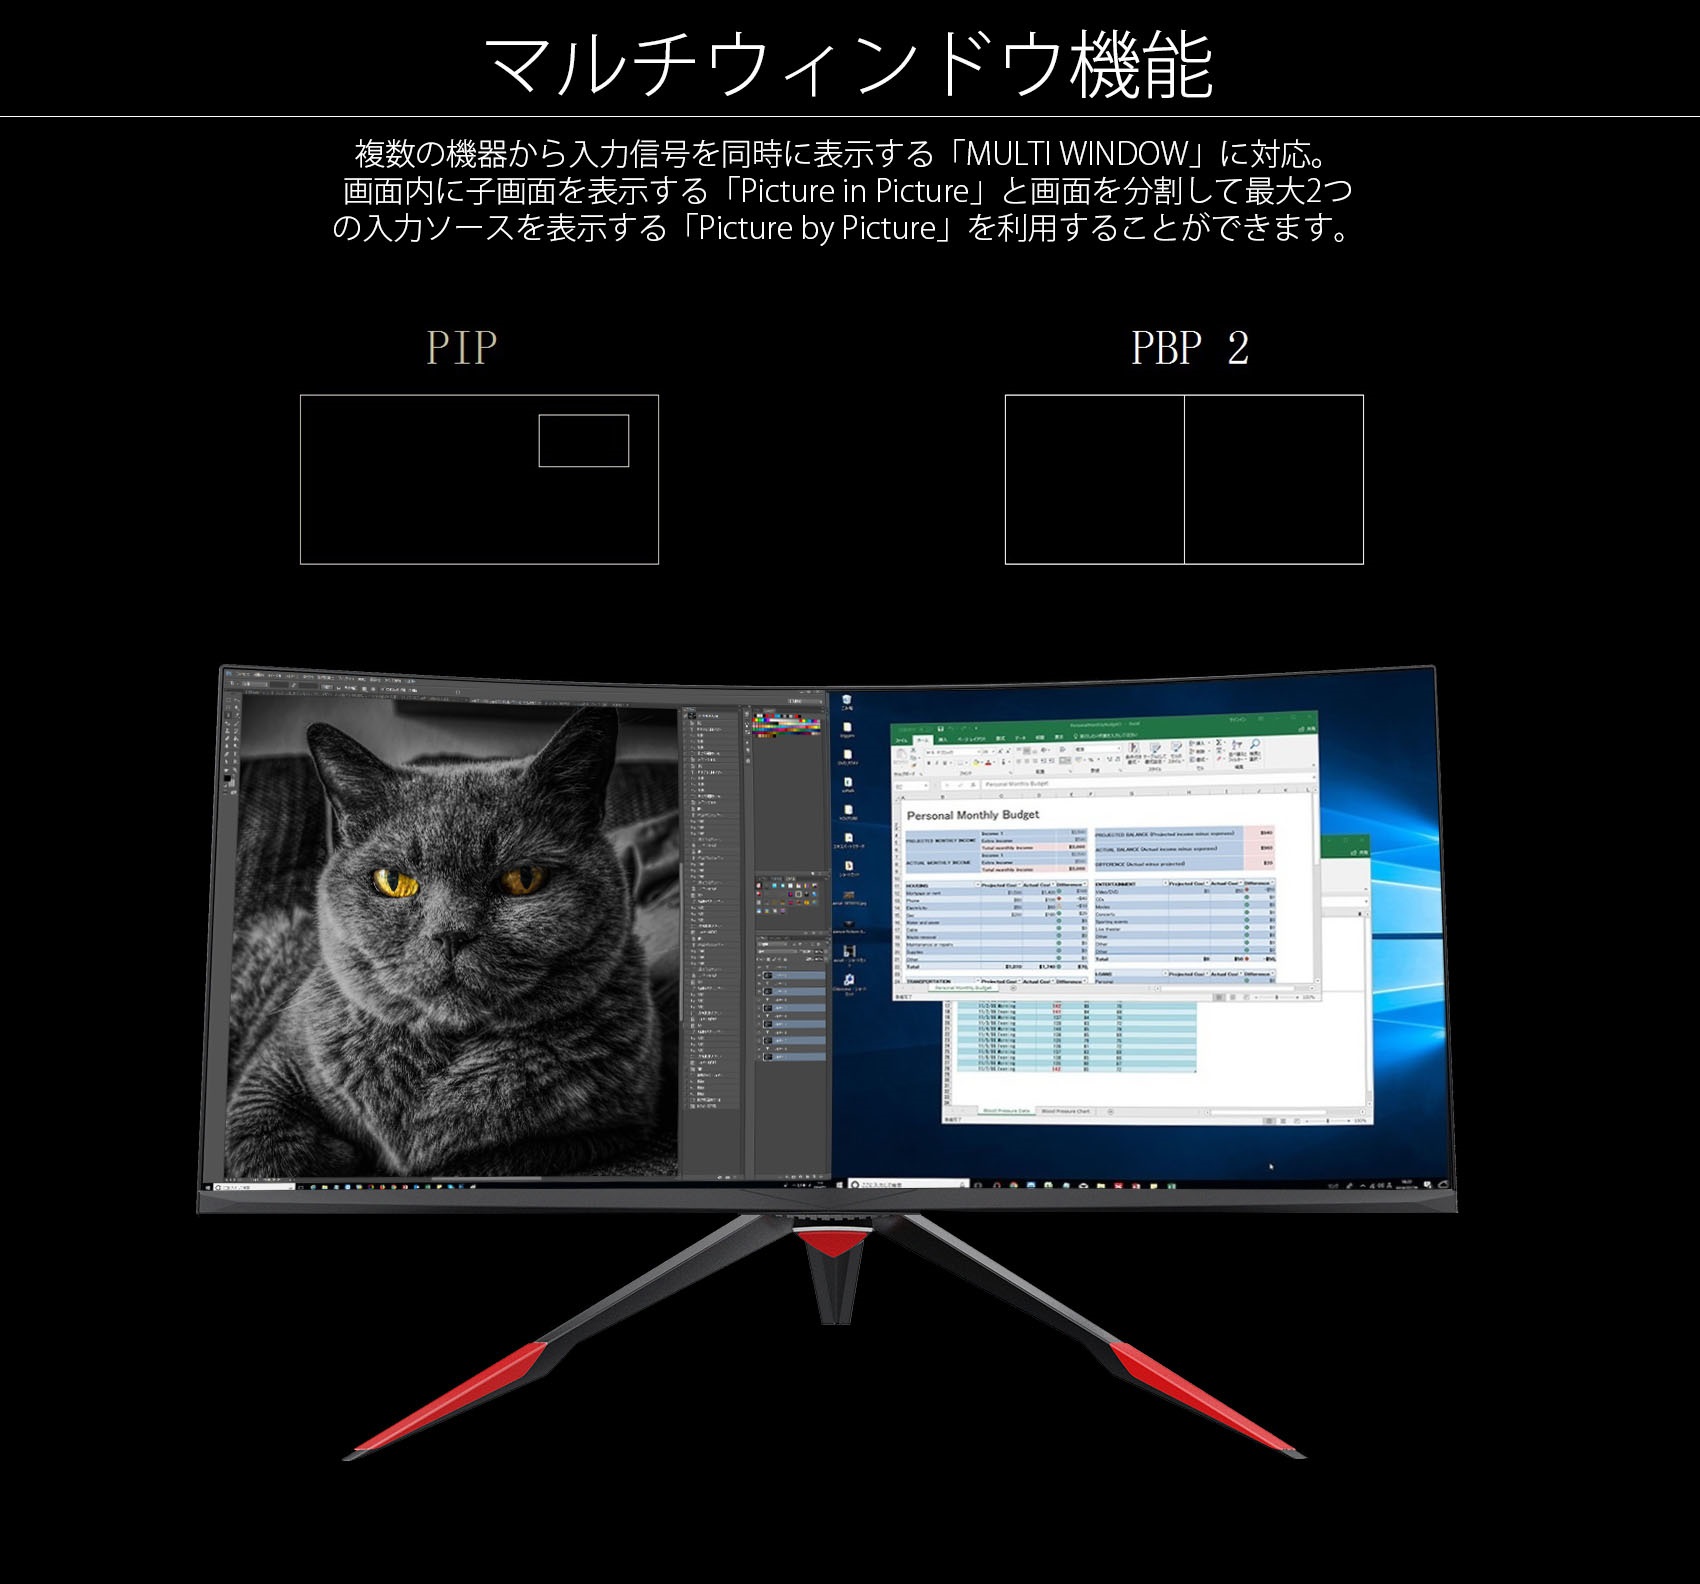 マルチウィンドウ機能搭載。複数の機器から入力信号を同時に表示する「MULTI WINDOW」に対応。画面内に子画面を表示する「Picture in Picture」と画面を分割して最大2つの入力ソースを表示する「Picture by Picture」を利用することができる。